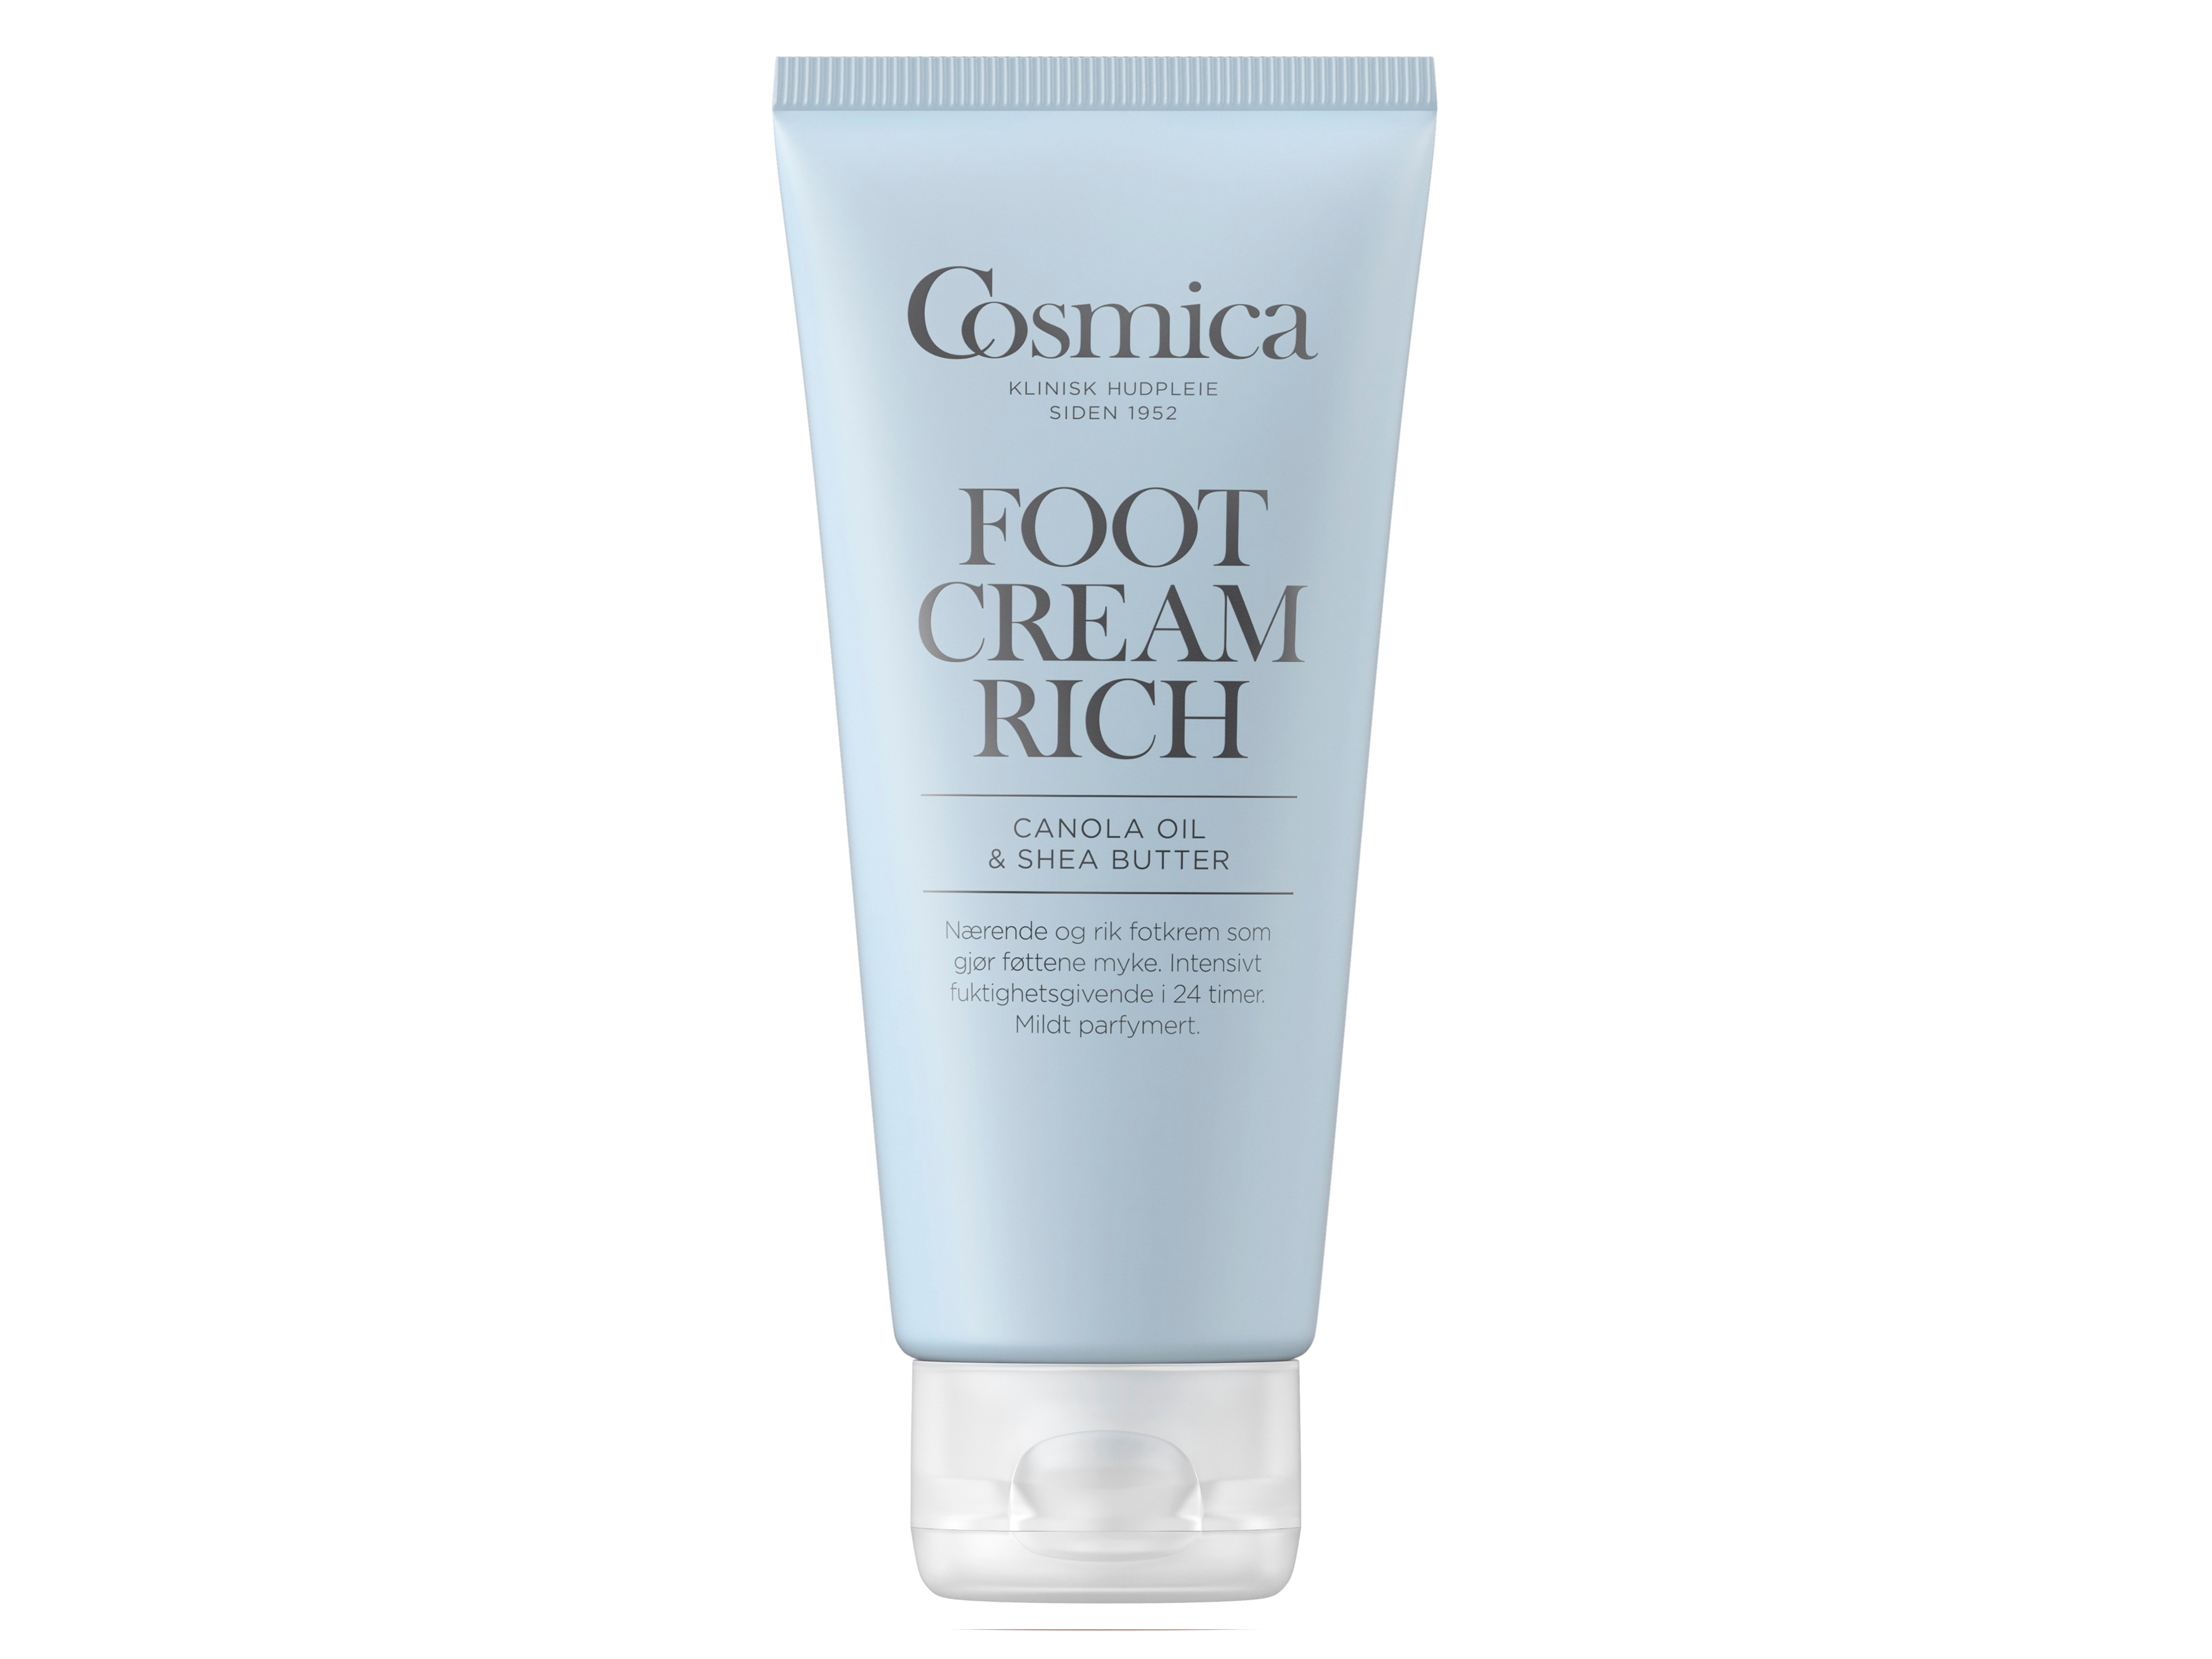 Cosmica Foot Cream Rich m/p, 100 ml